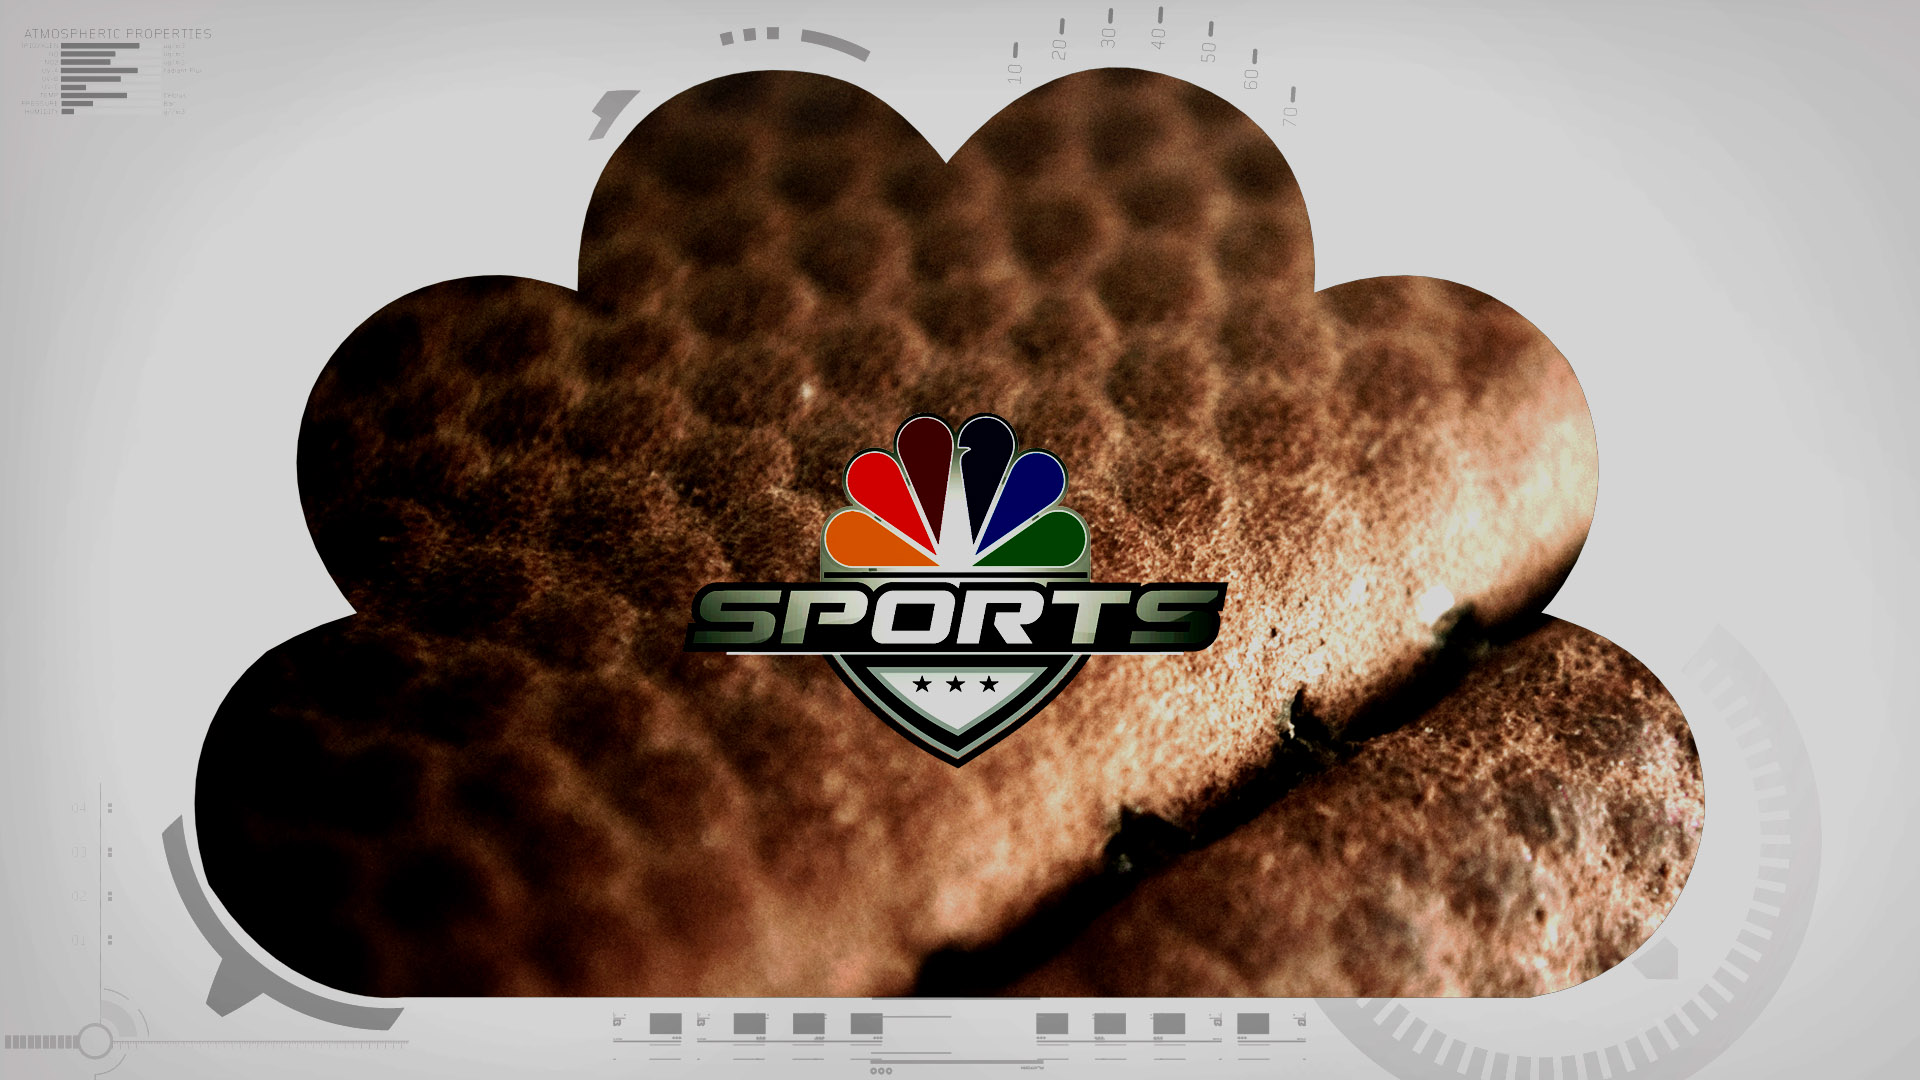 NBC_Sports-ID_HD-002.jpg